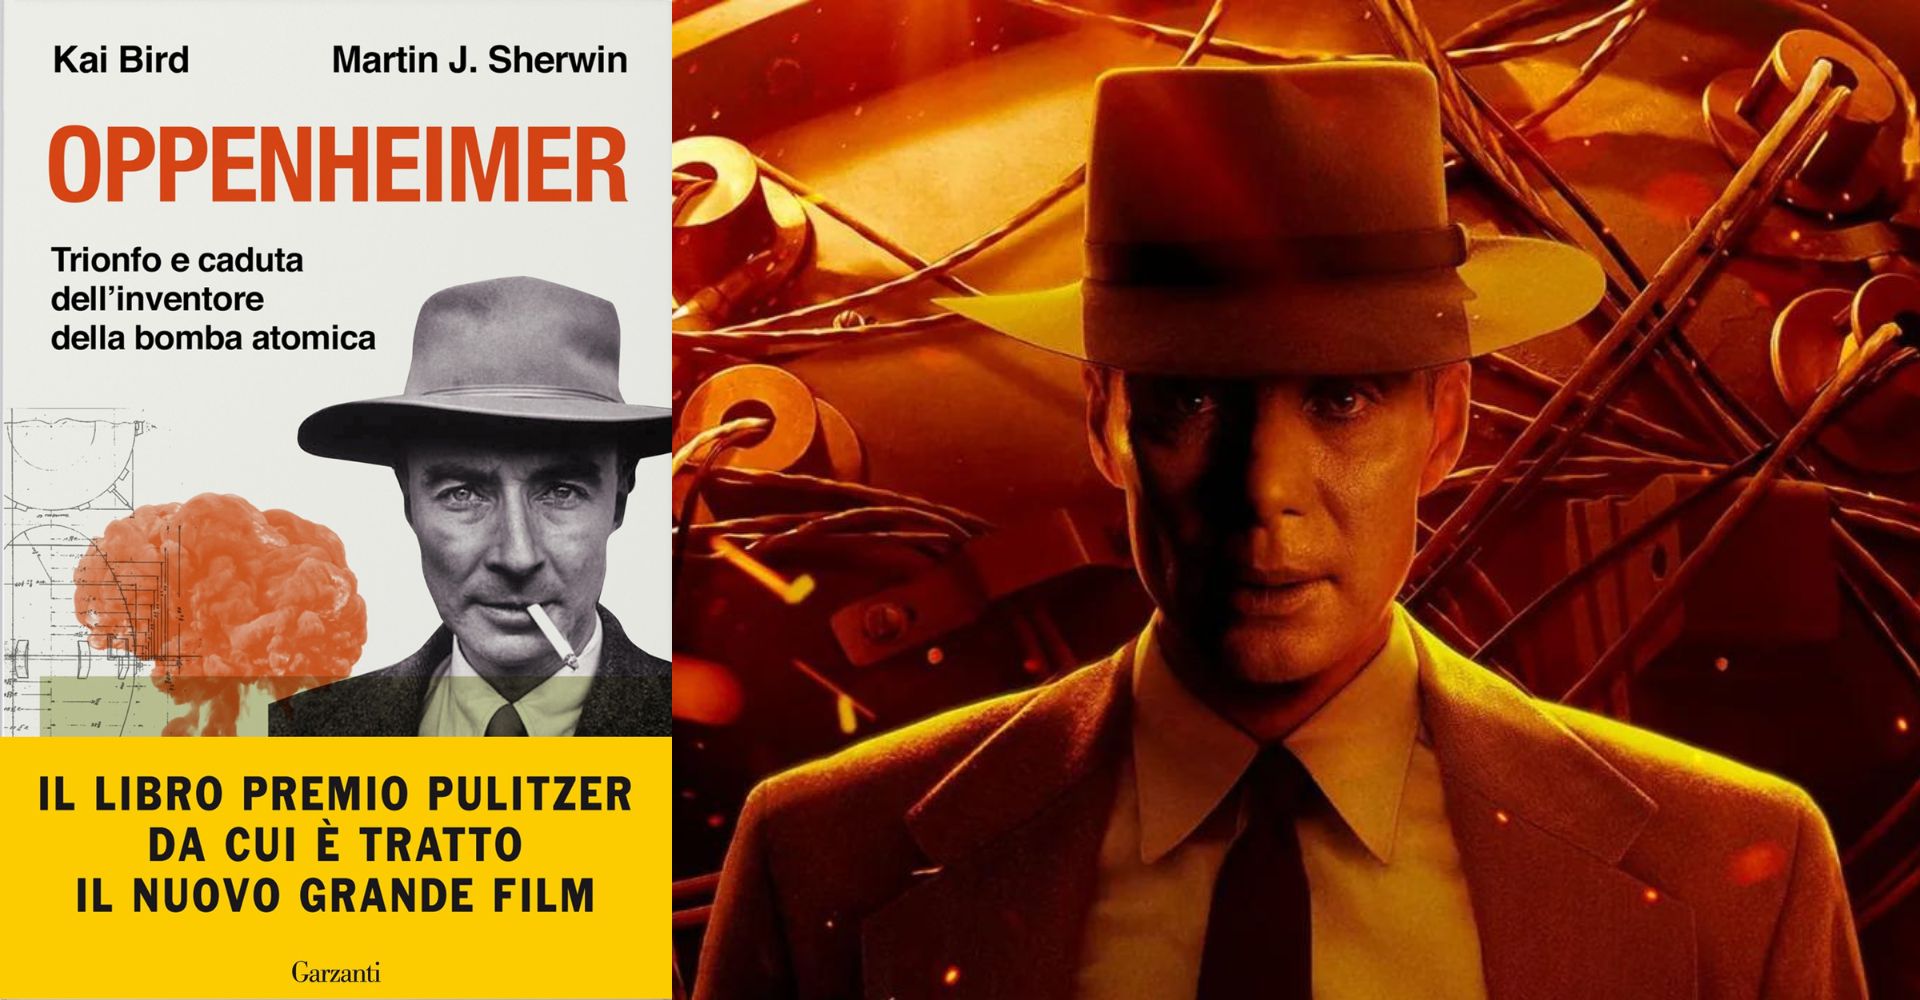 Copertina del libro Oppenheimer di Kai Bird e Martin J. Sherwin e un fotogramma del film Oppenheimer, che il regista Christopher Nolan ha tratto dal libro